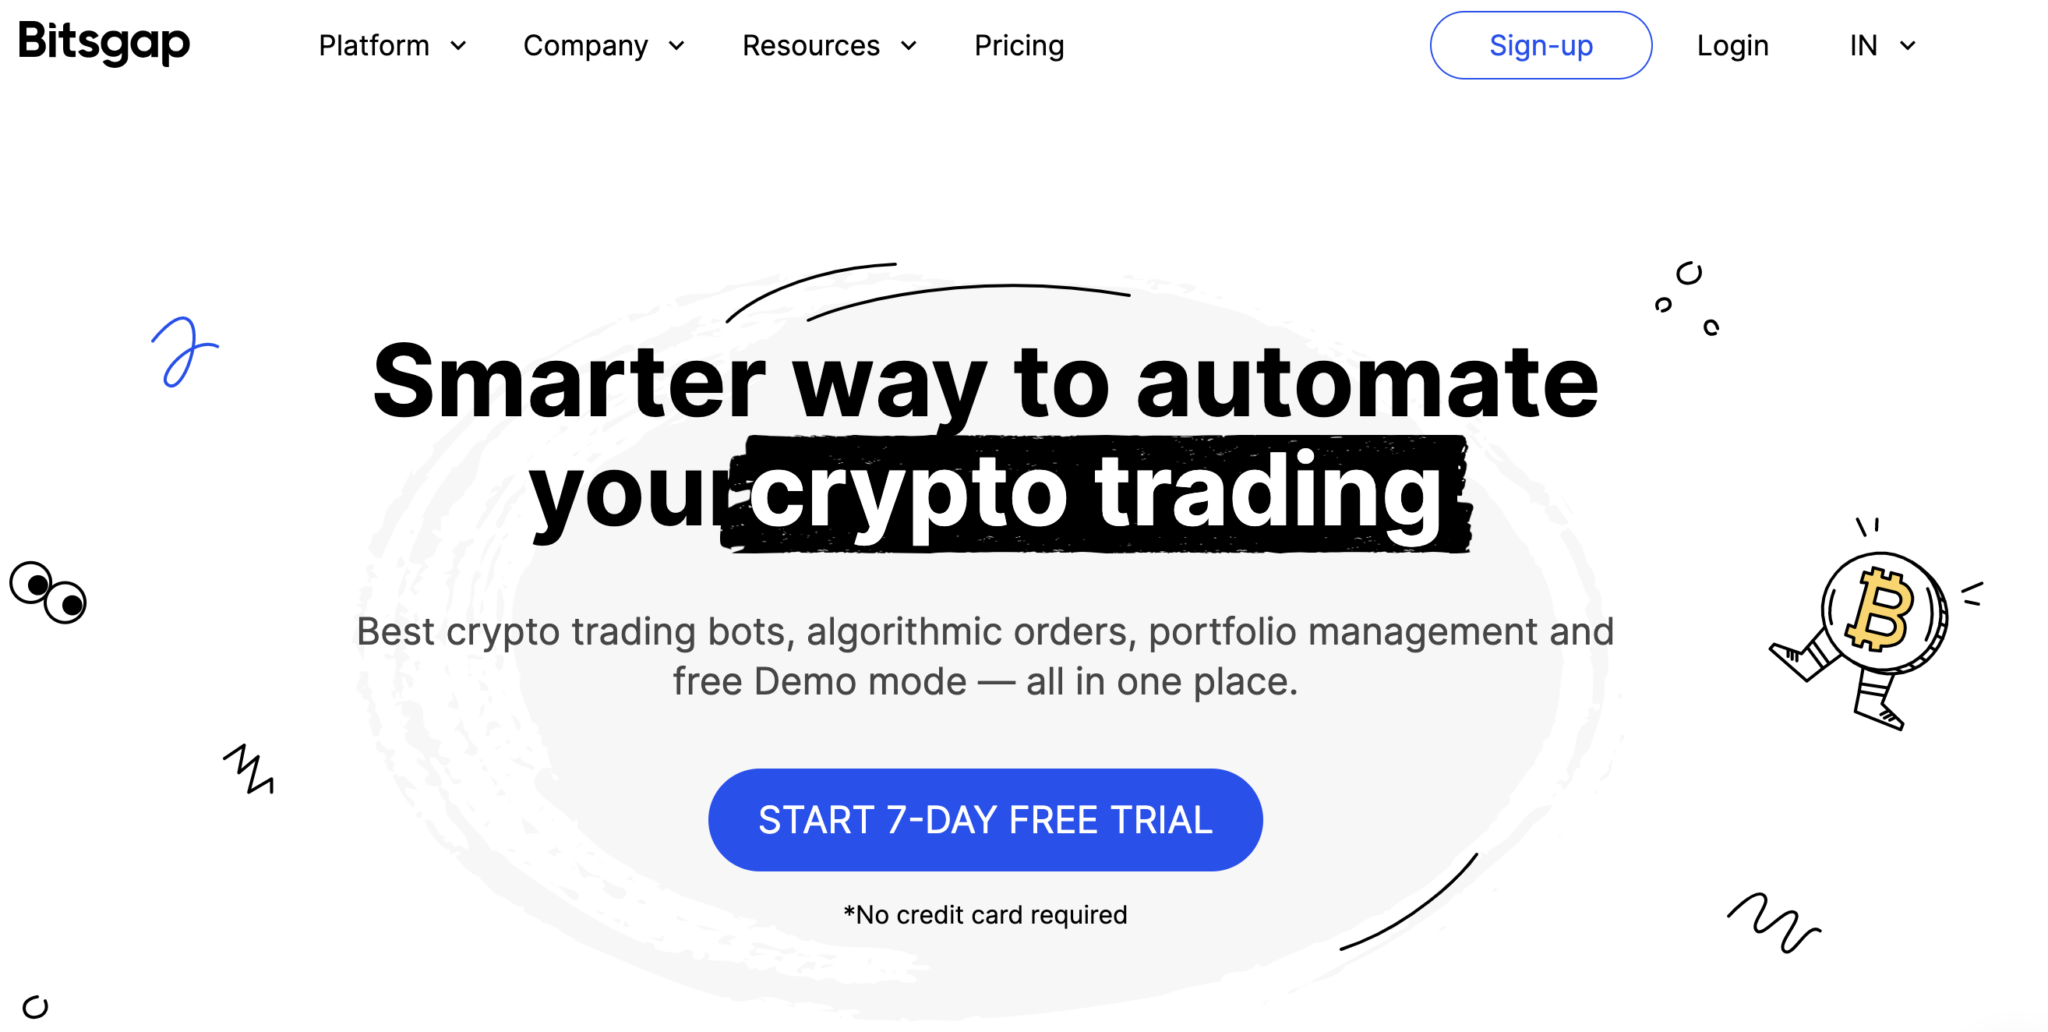 best crypto trading bots: Bitsgap